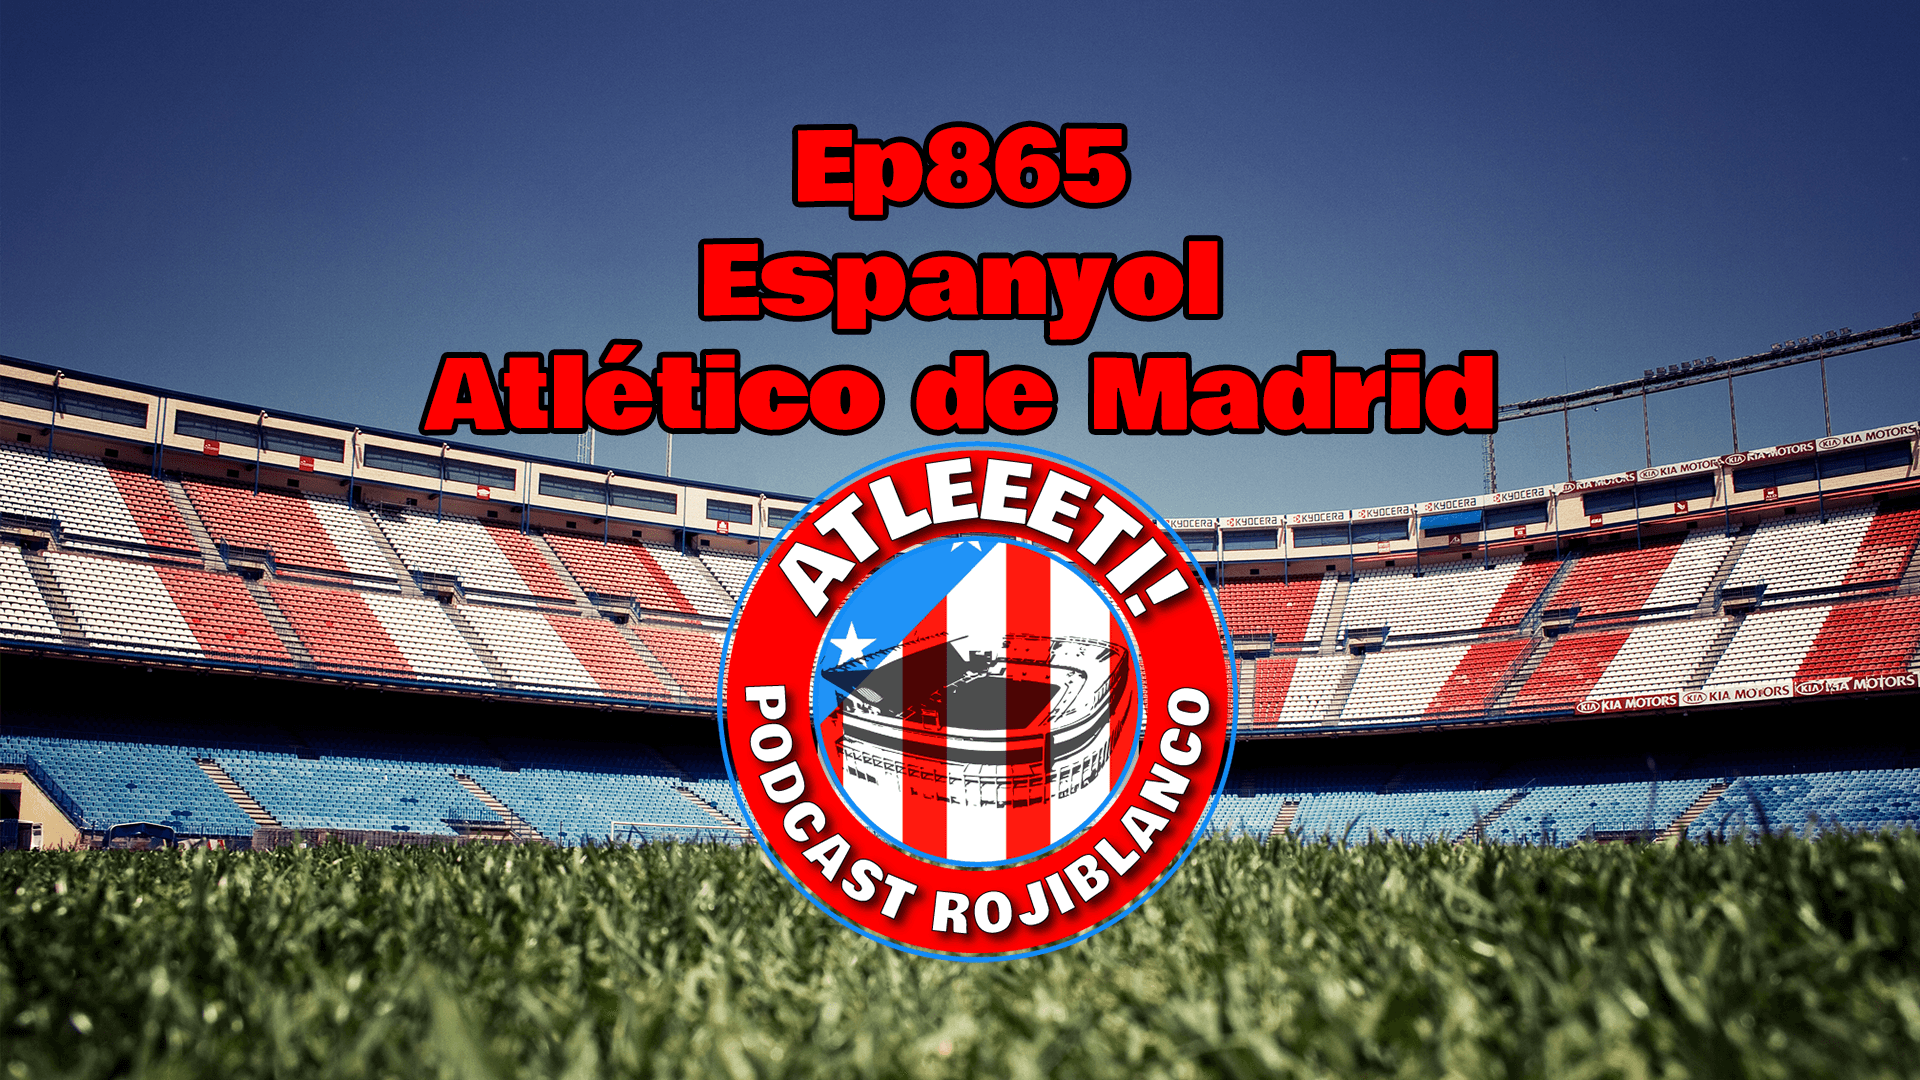 Ep865: Espanyol 3-3 Atlético de Madrid